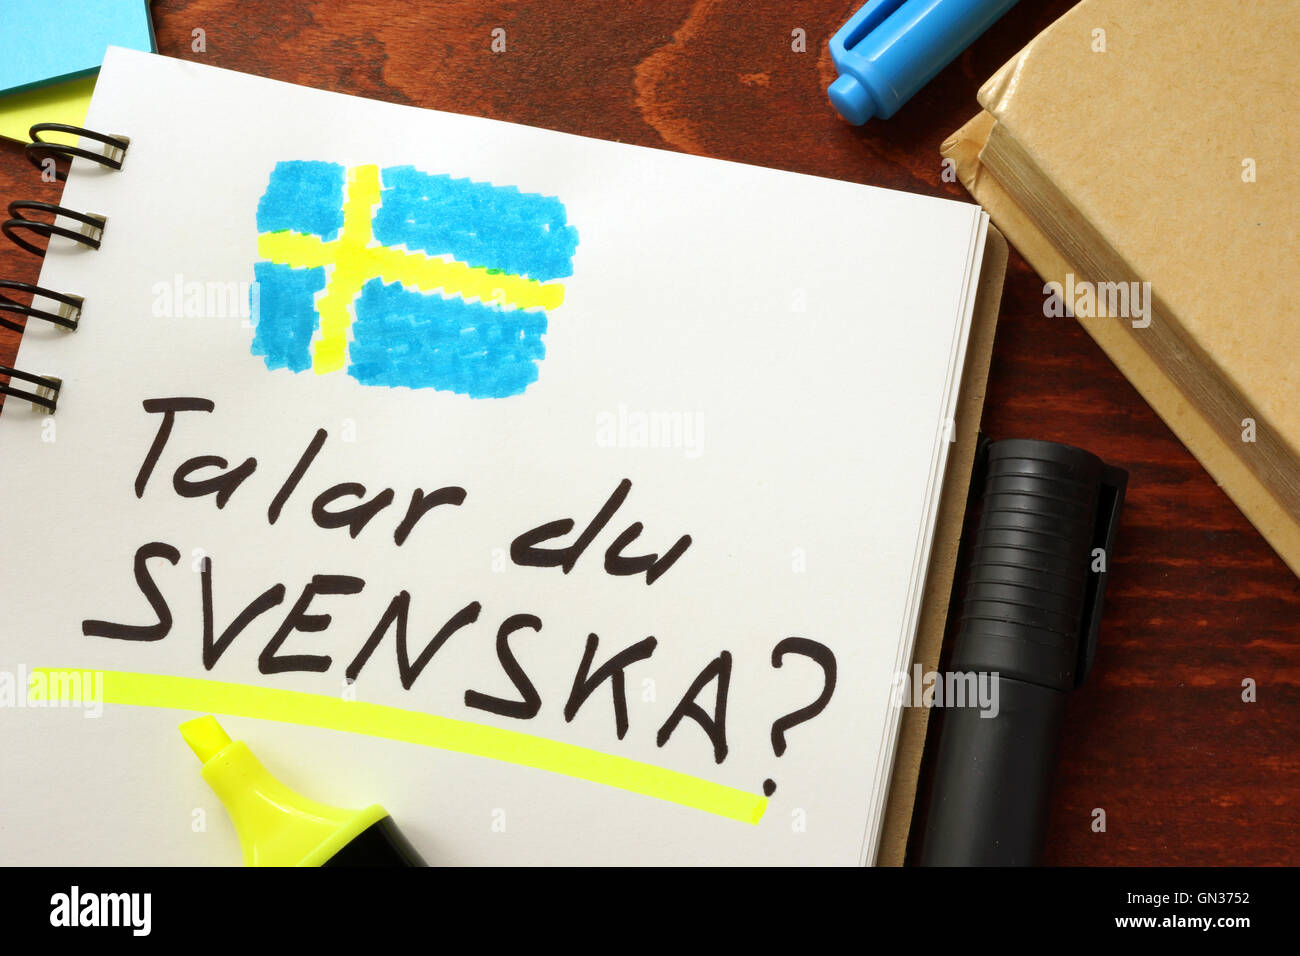 Lerne Schwedisch in einem Editor geschrieben.  Bildungskonzept. Stockfoto